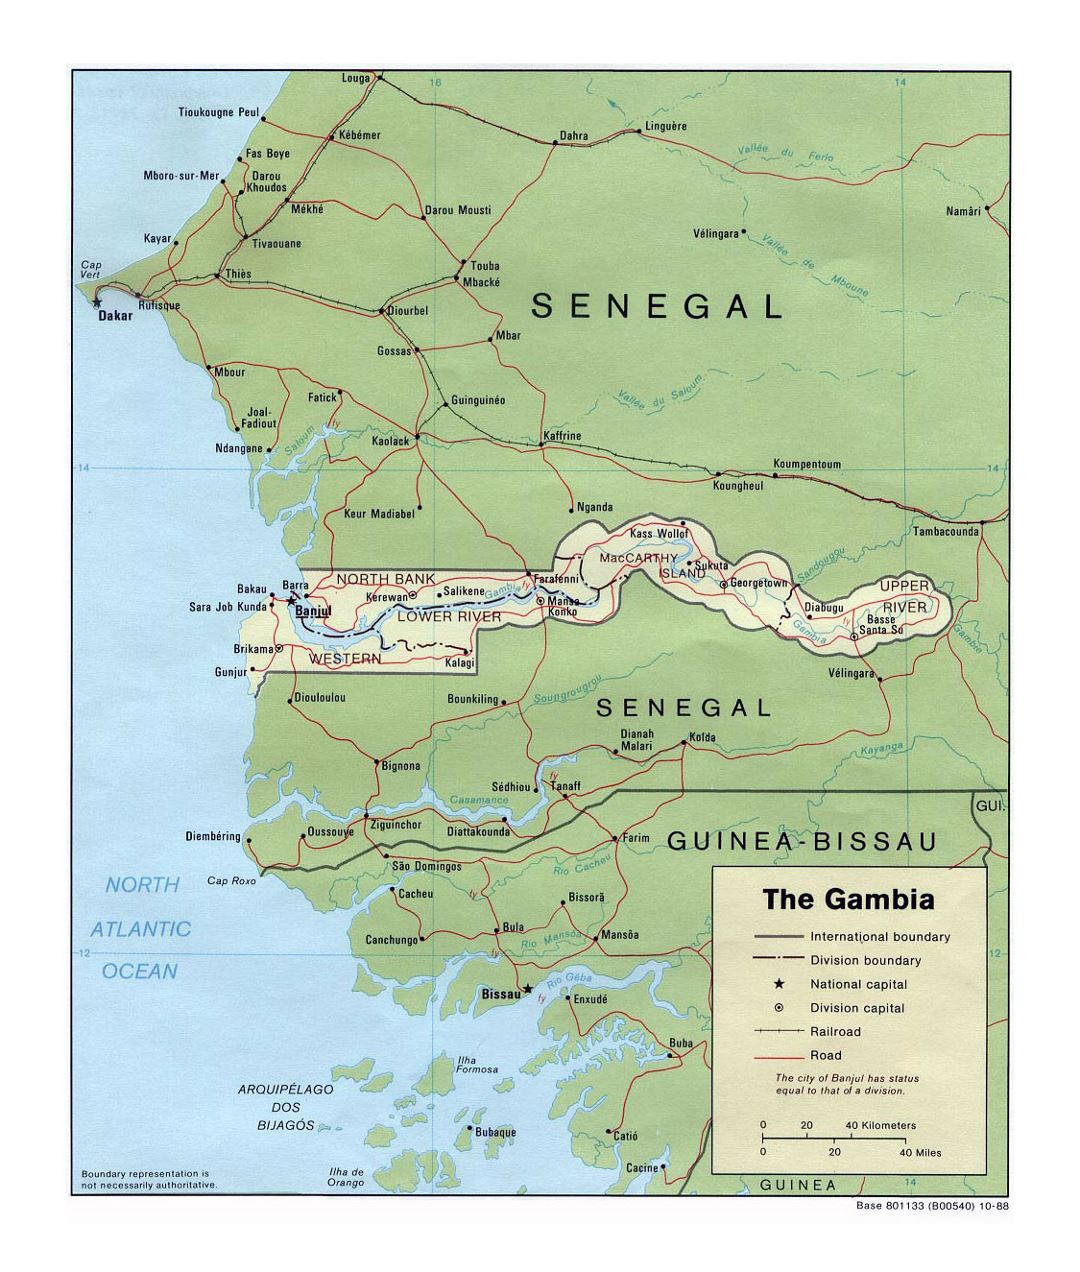 Детальная политическая и административная карта Гамбии с дорогами, железными дорогами и крупными городами - 1988